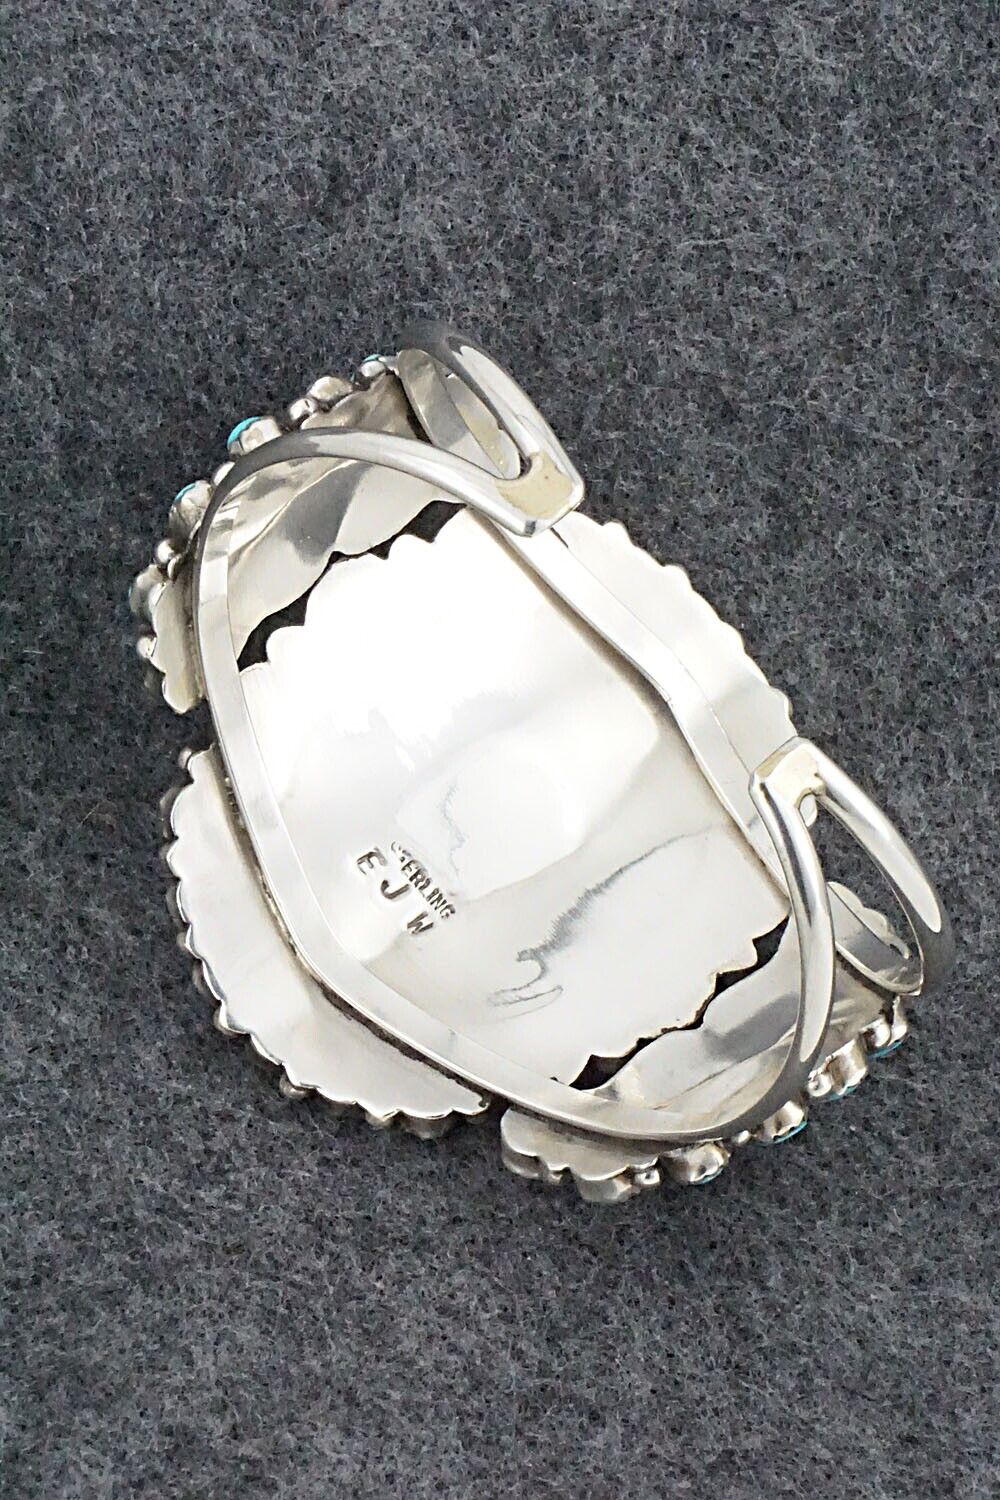 Turquoise & Sterling Silver Bracelet - Eunise Wilson